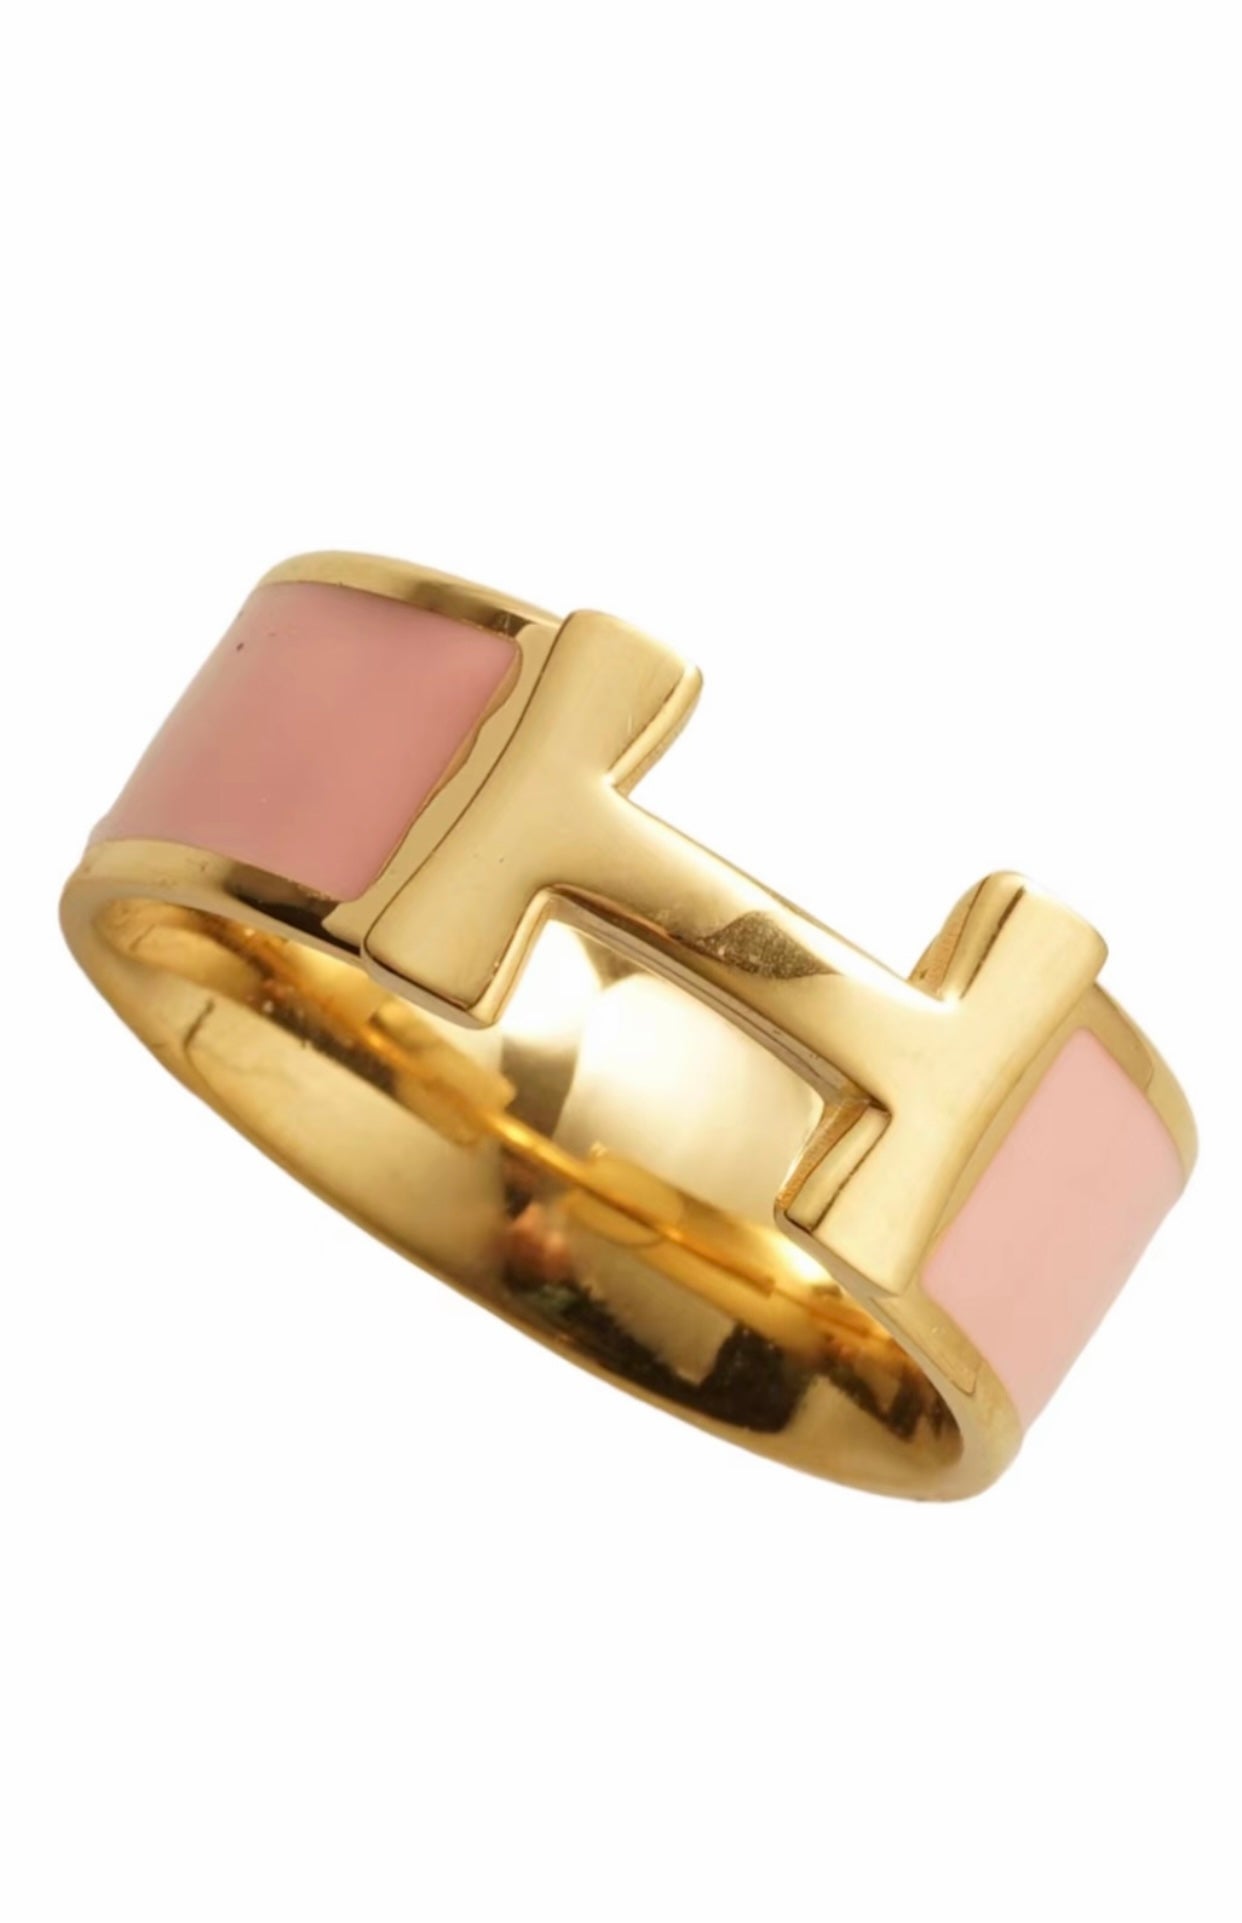 Pink H Ring